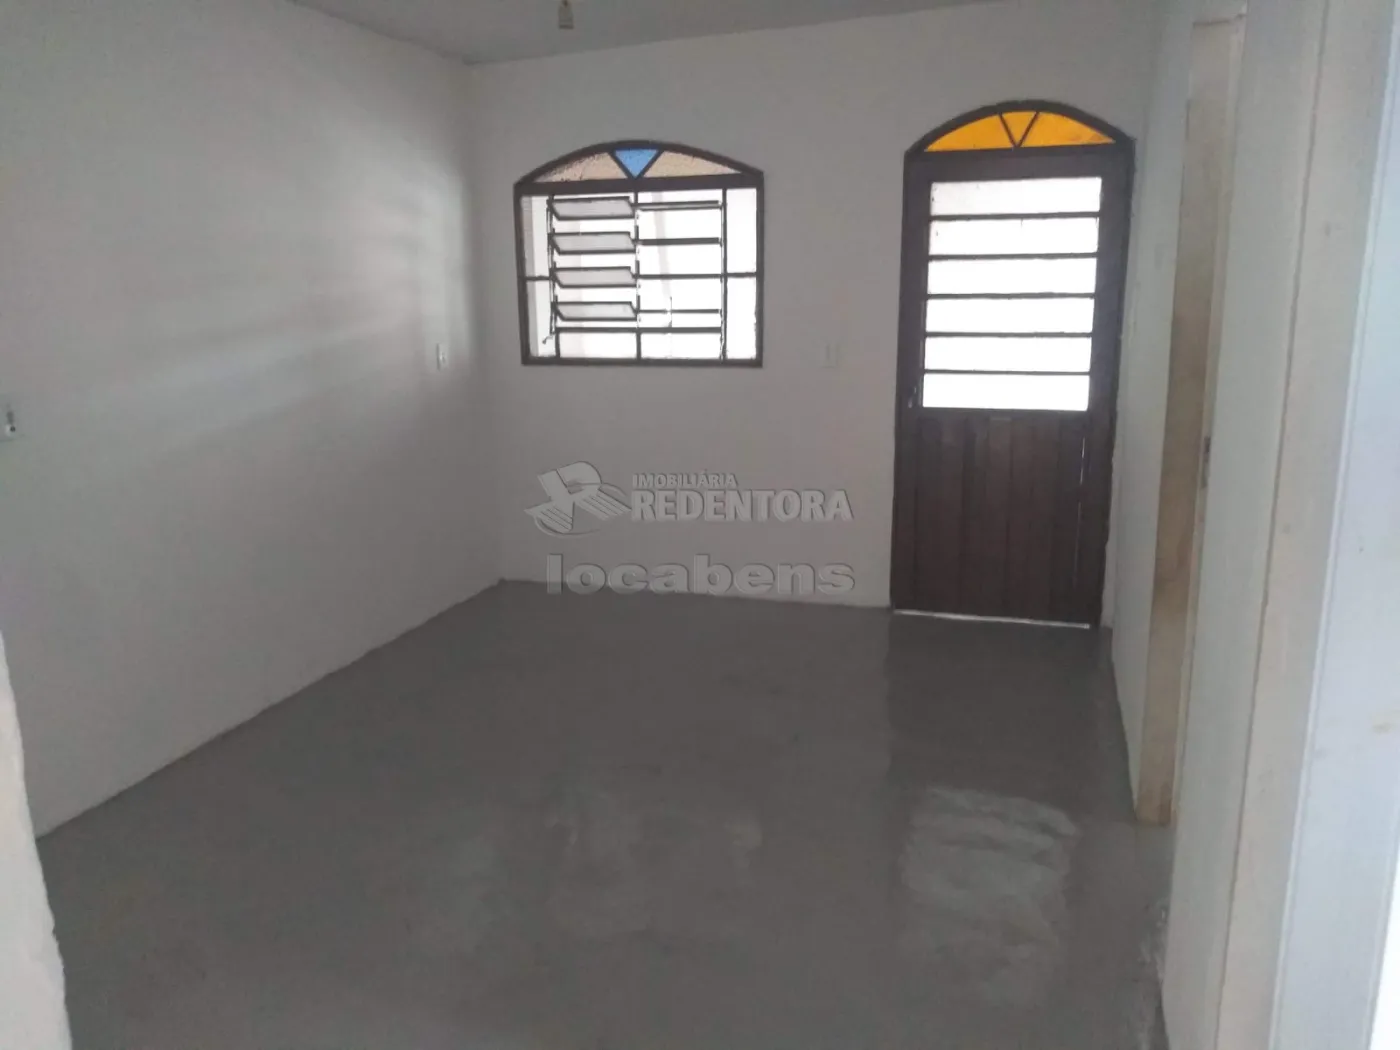 Comprar Casa / Padrão em São José do Rio Preto R$ 230.000,00 - Foto 7